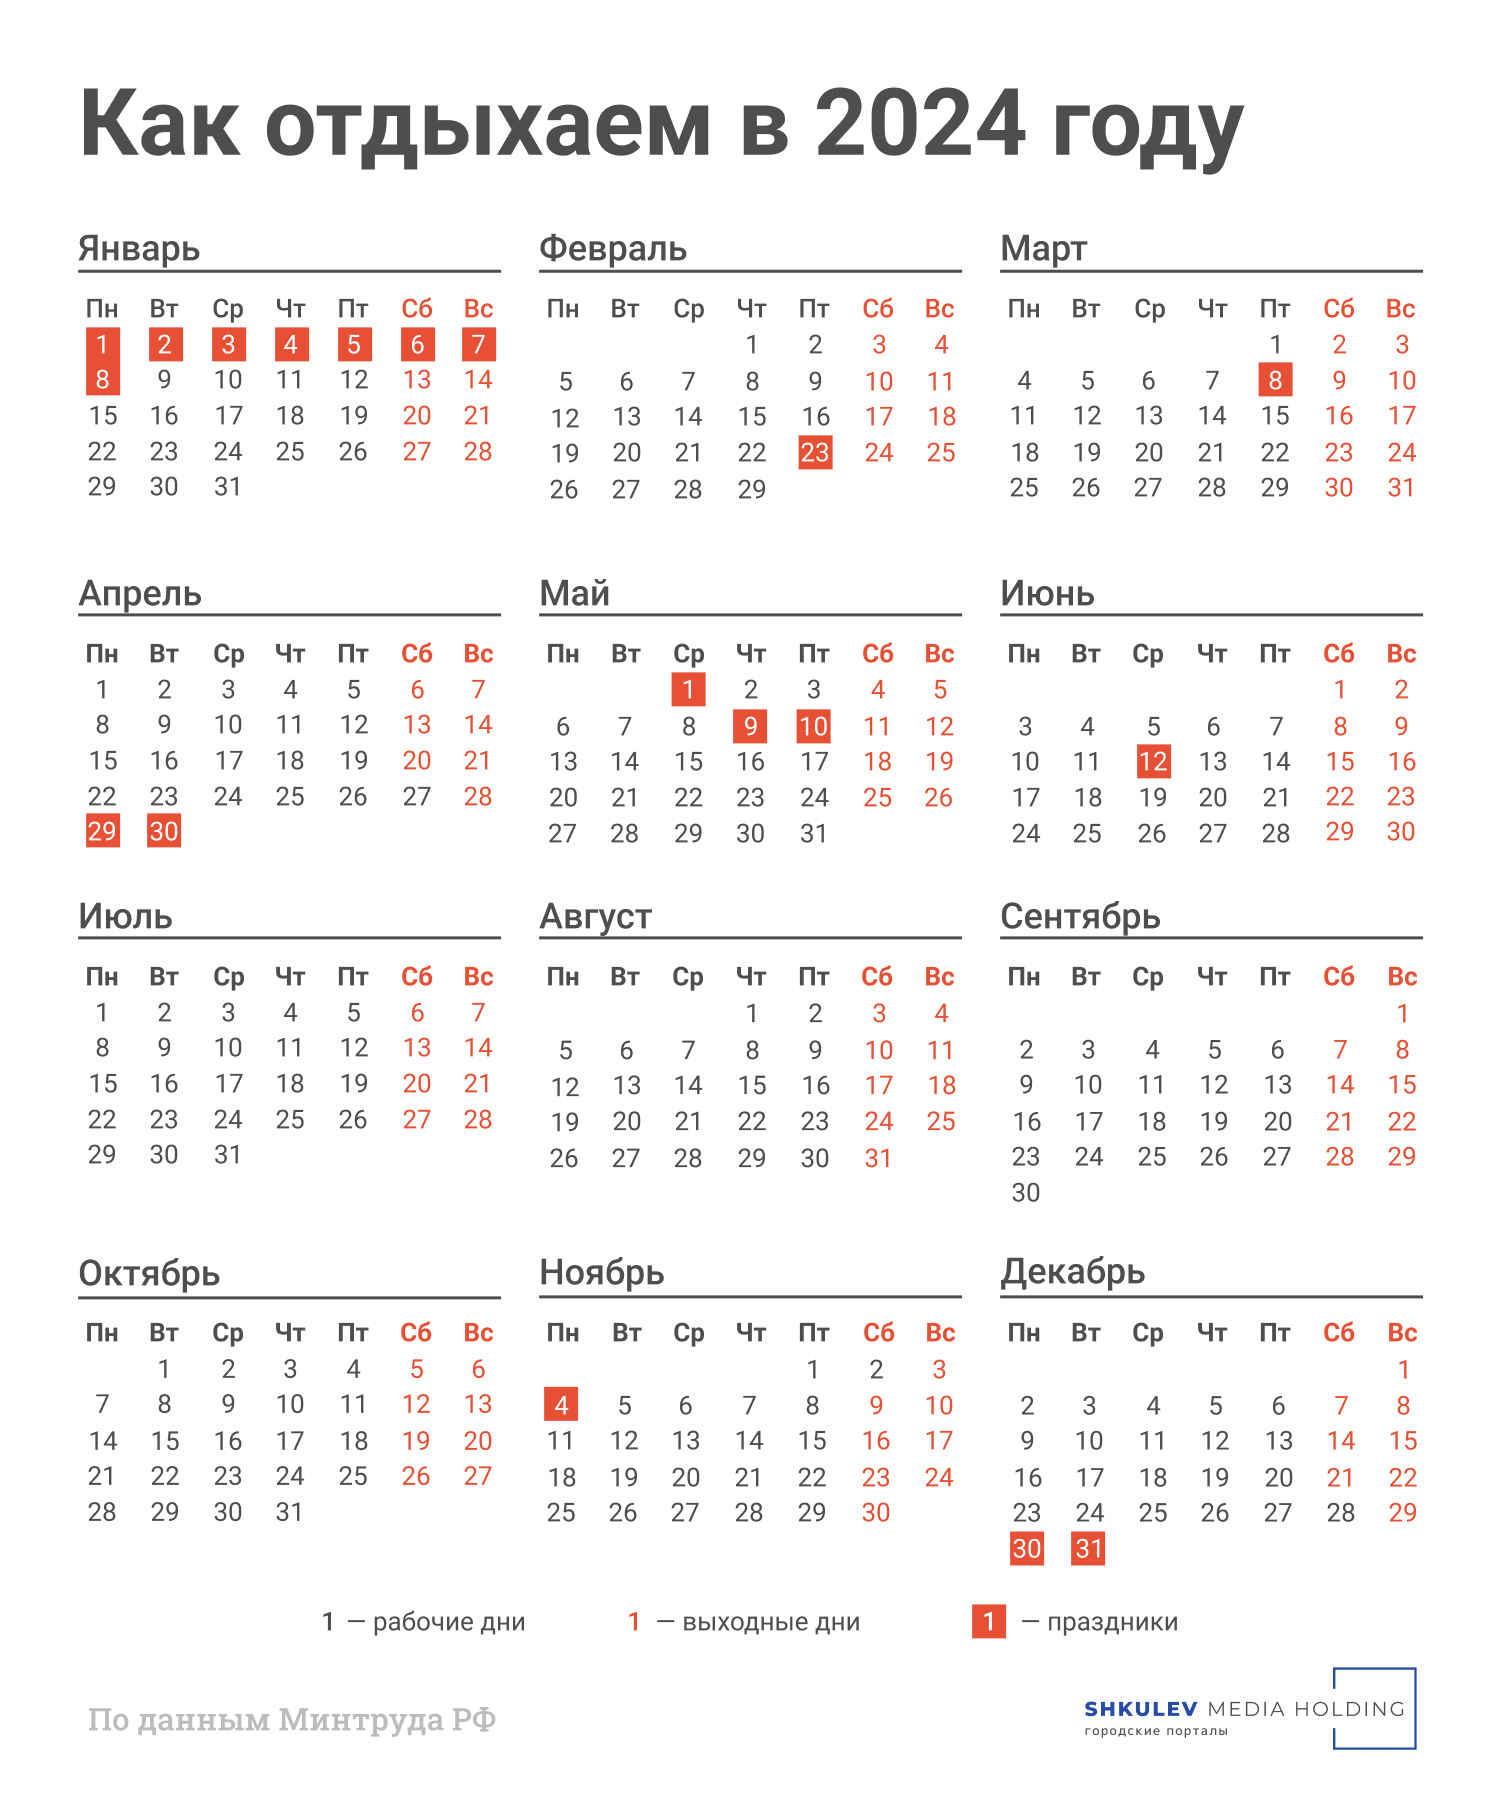 Стали известны выходные дни на новогодние праздники в 2024 году - 19 июня  2023 - НГС